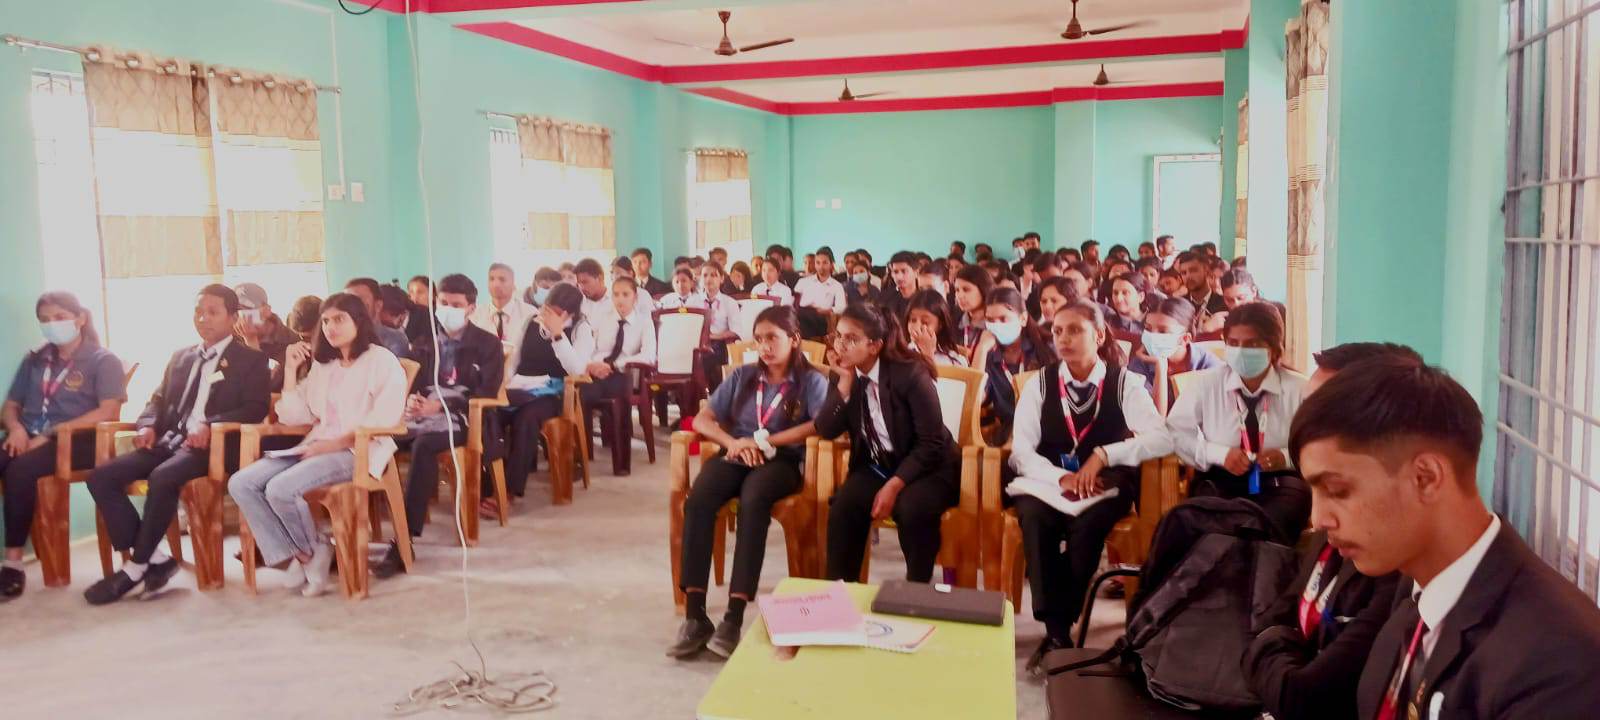 लुम्बिनी बौद्य विश्व बिद्यालय सिटि क्याम्पस मा  नागरिकता बिधेक सम्बन्धि  अन्तरक्रिया  कार्यक्रम सम्पन्न